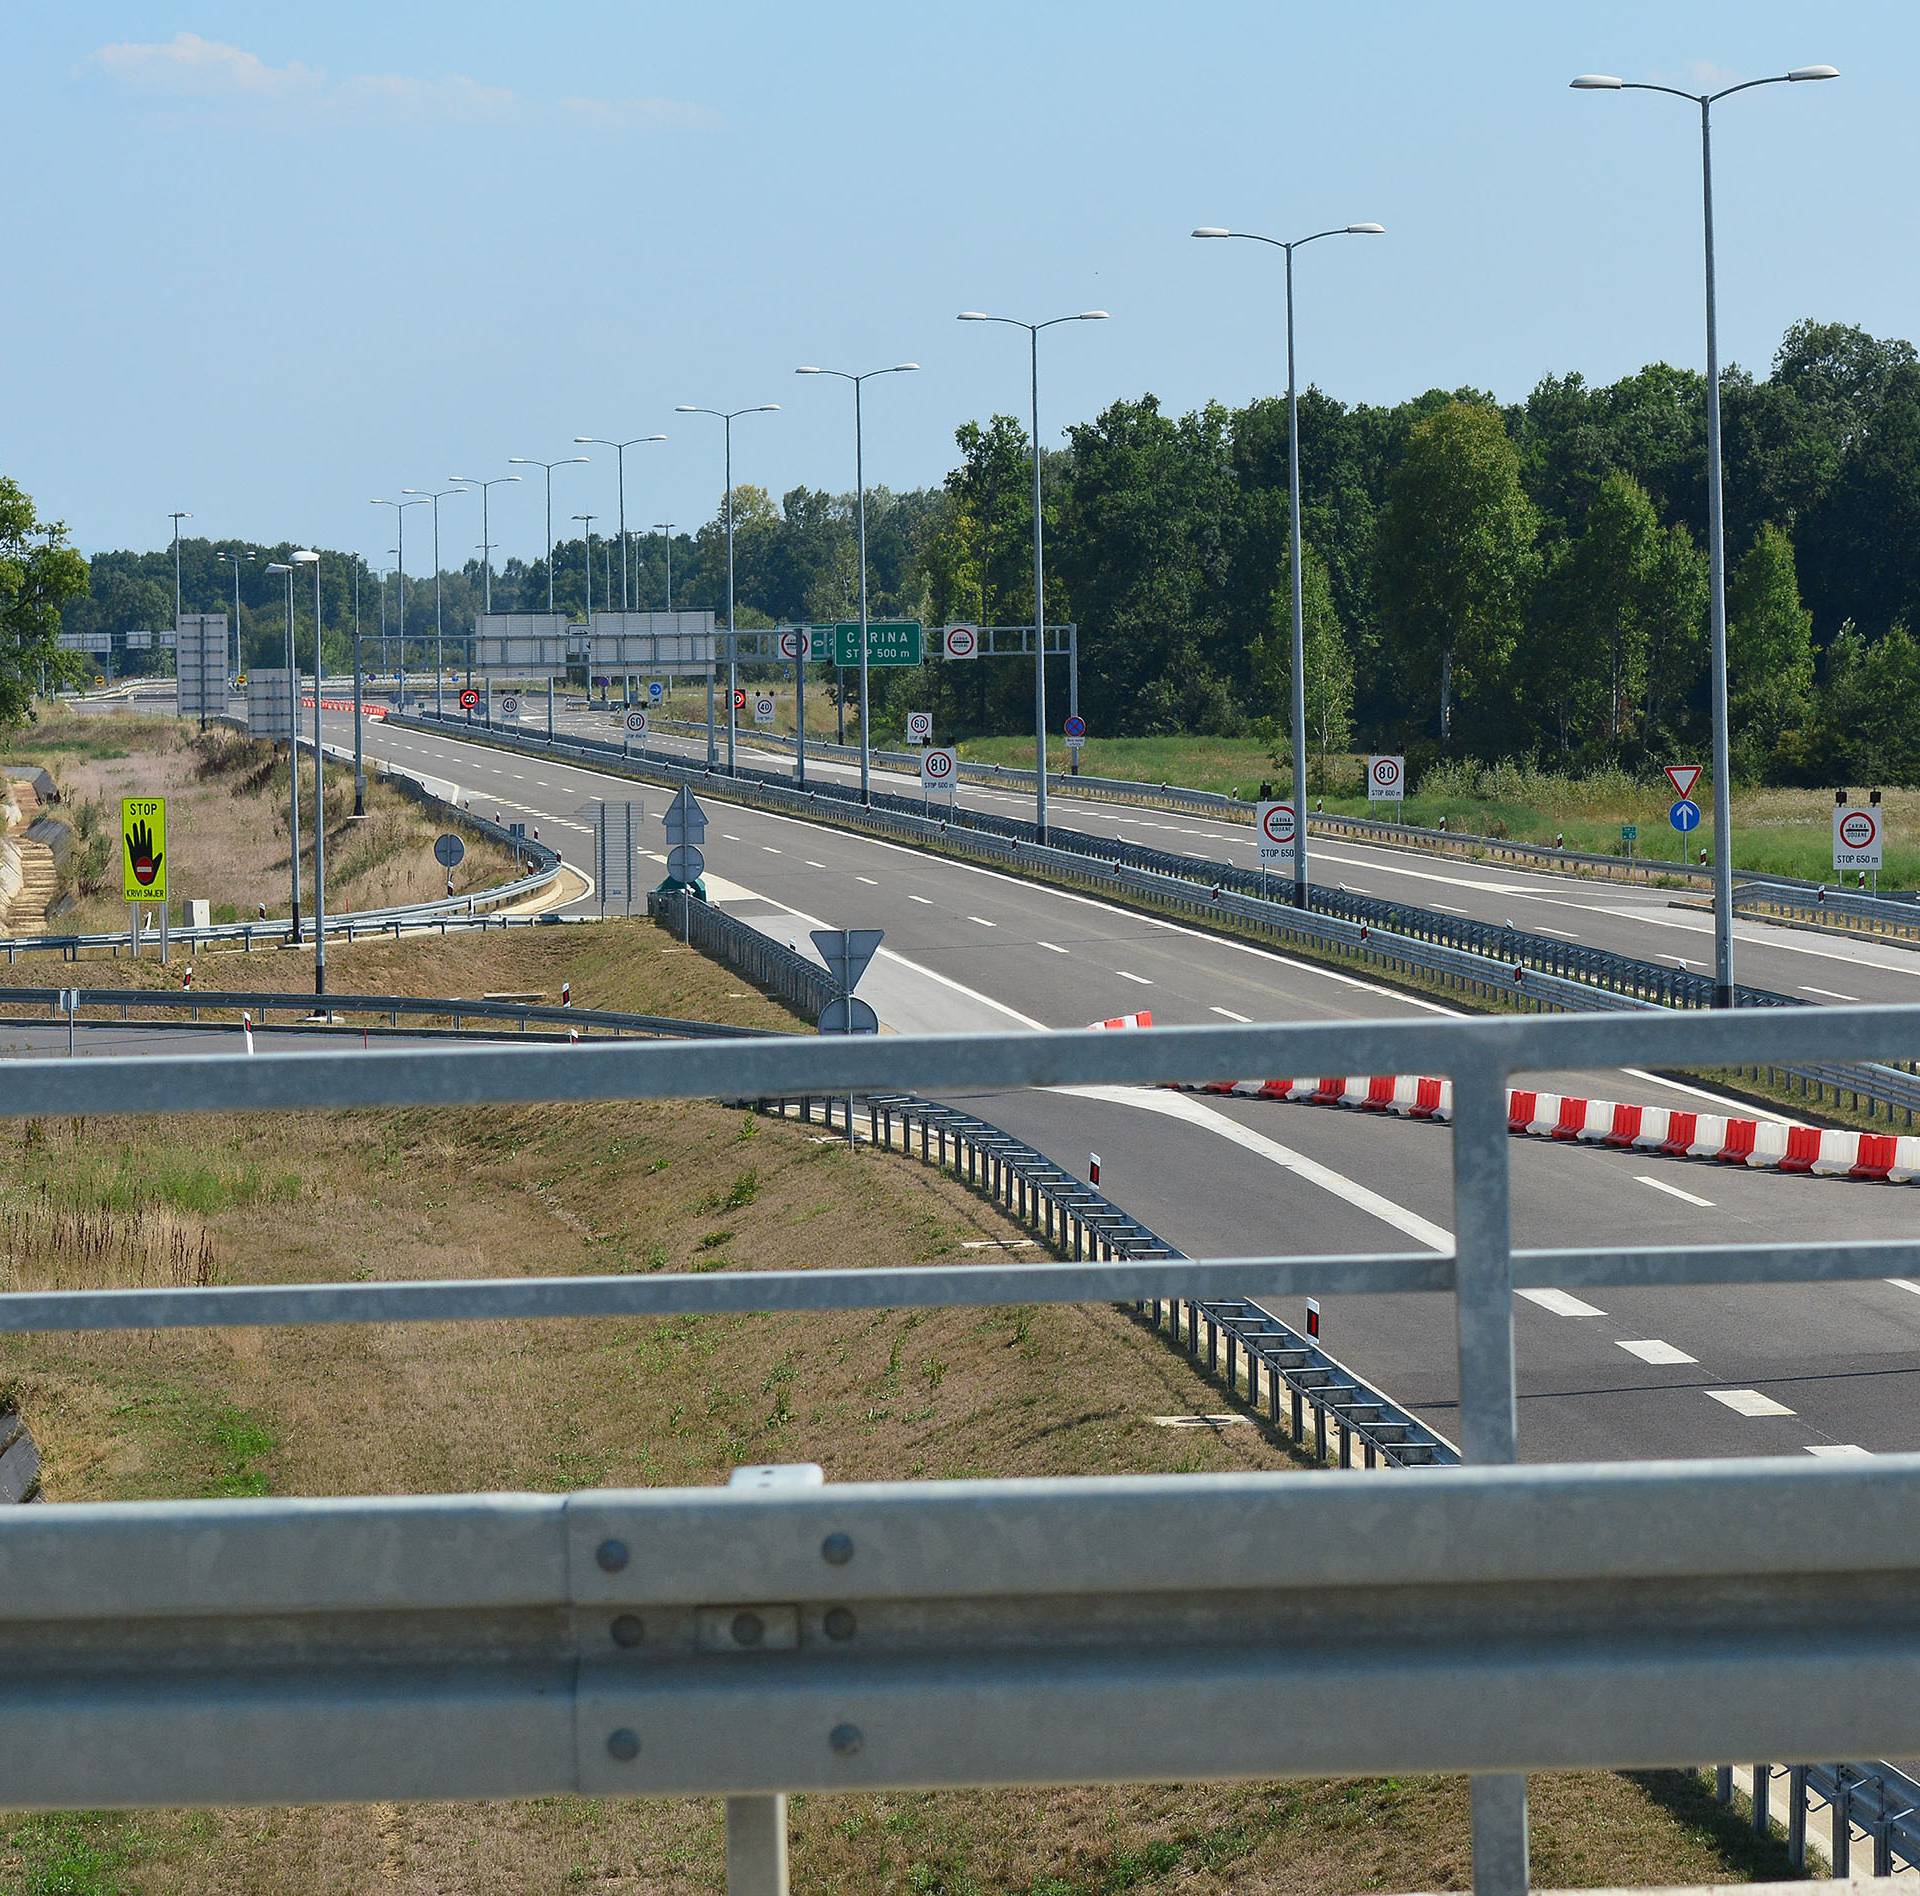 Kosovar autocestom kod Broda jurio čak 268 kilometara na sat